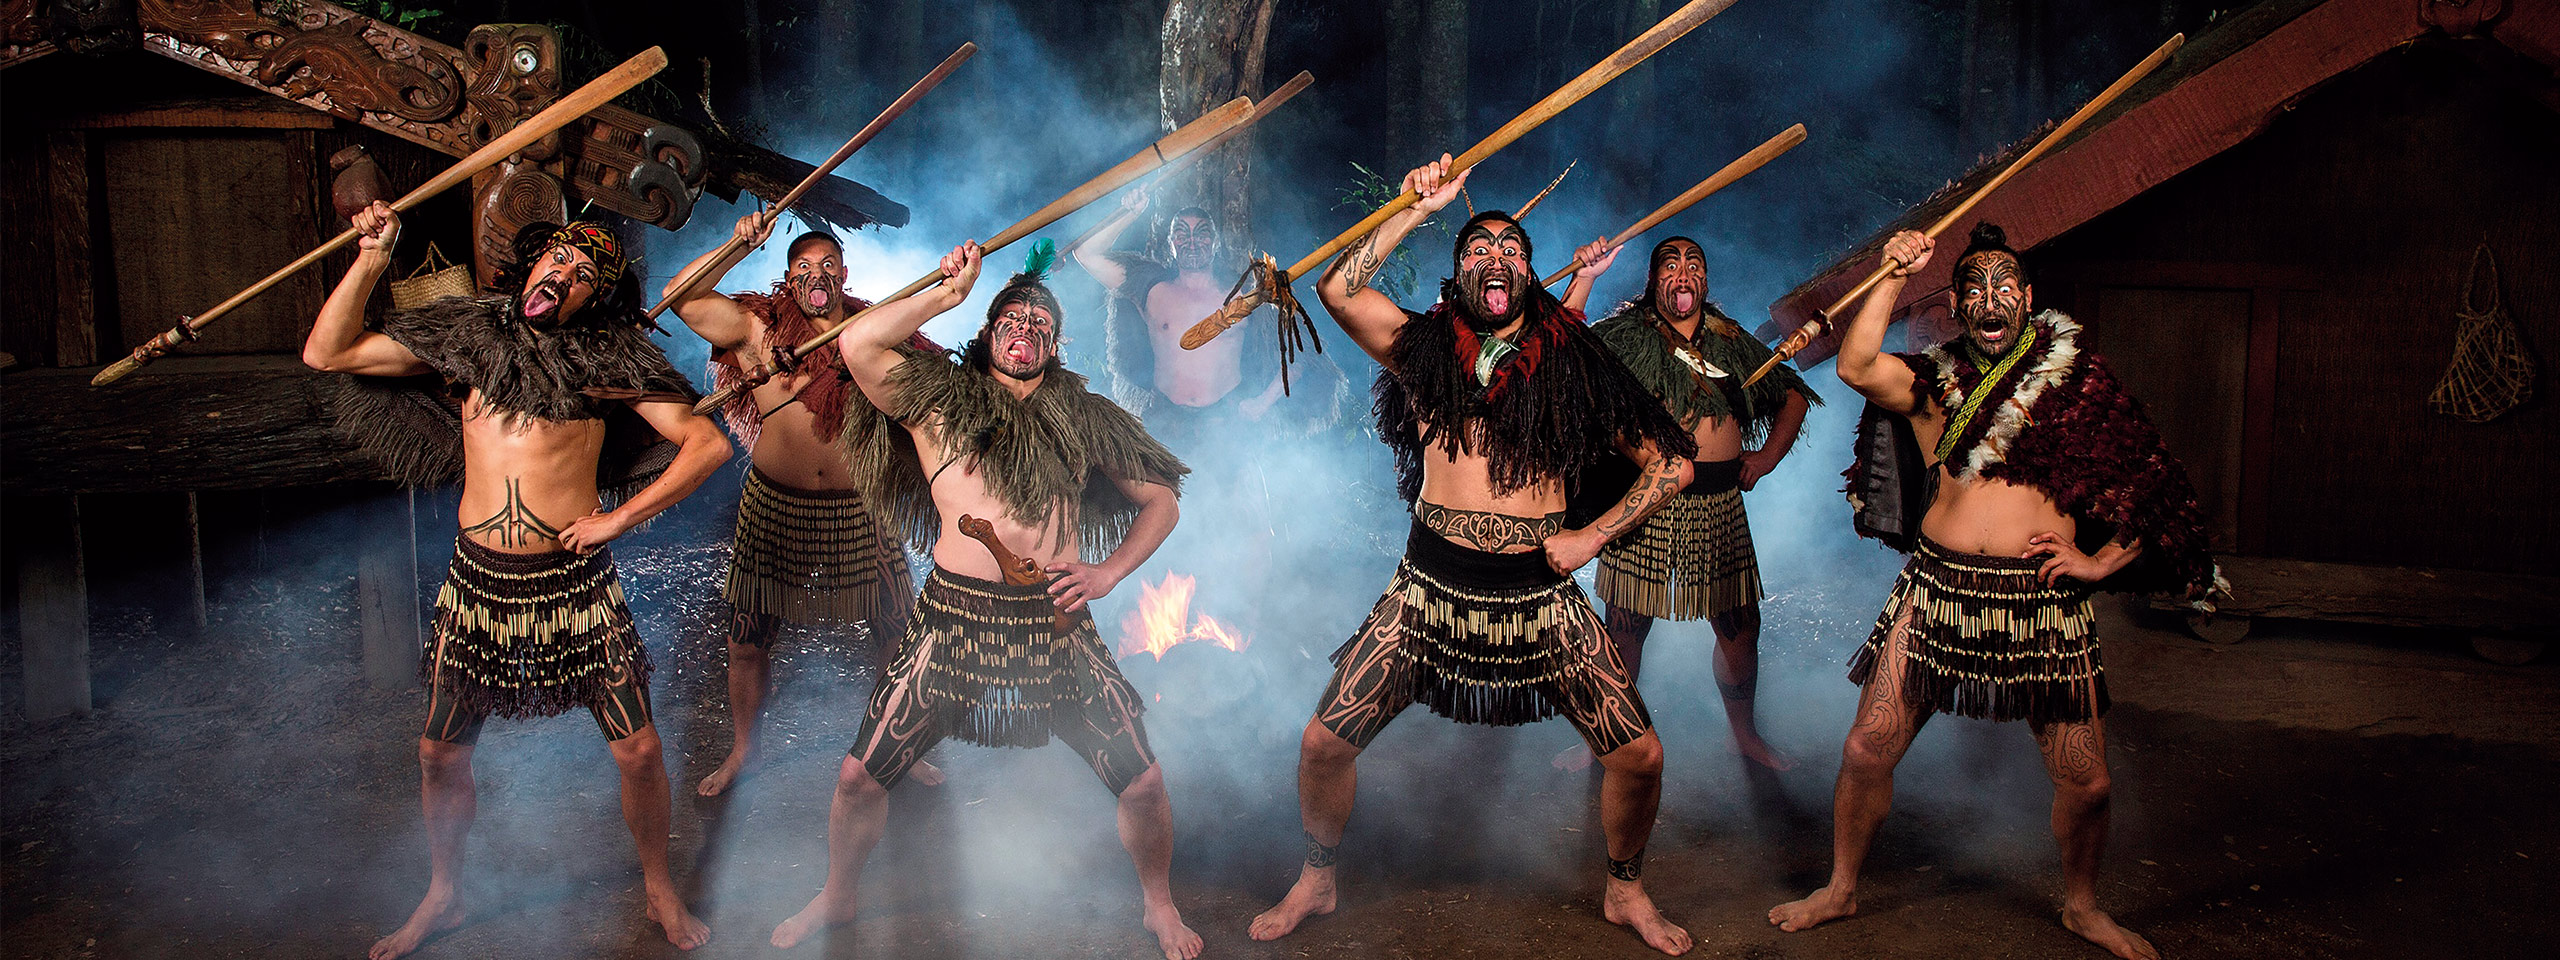 Tamaki Maori Culture